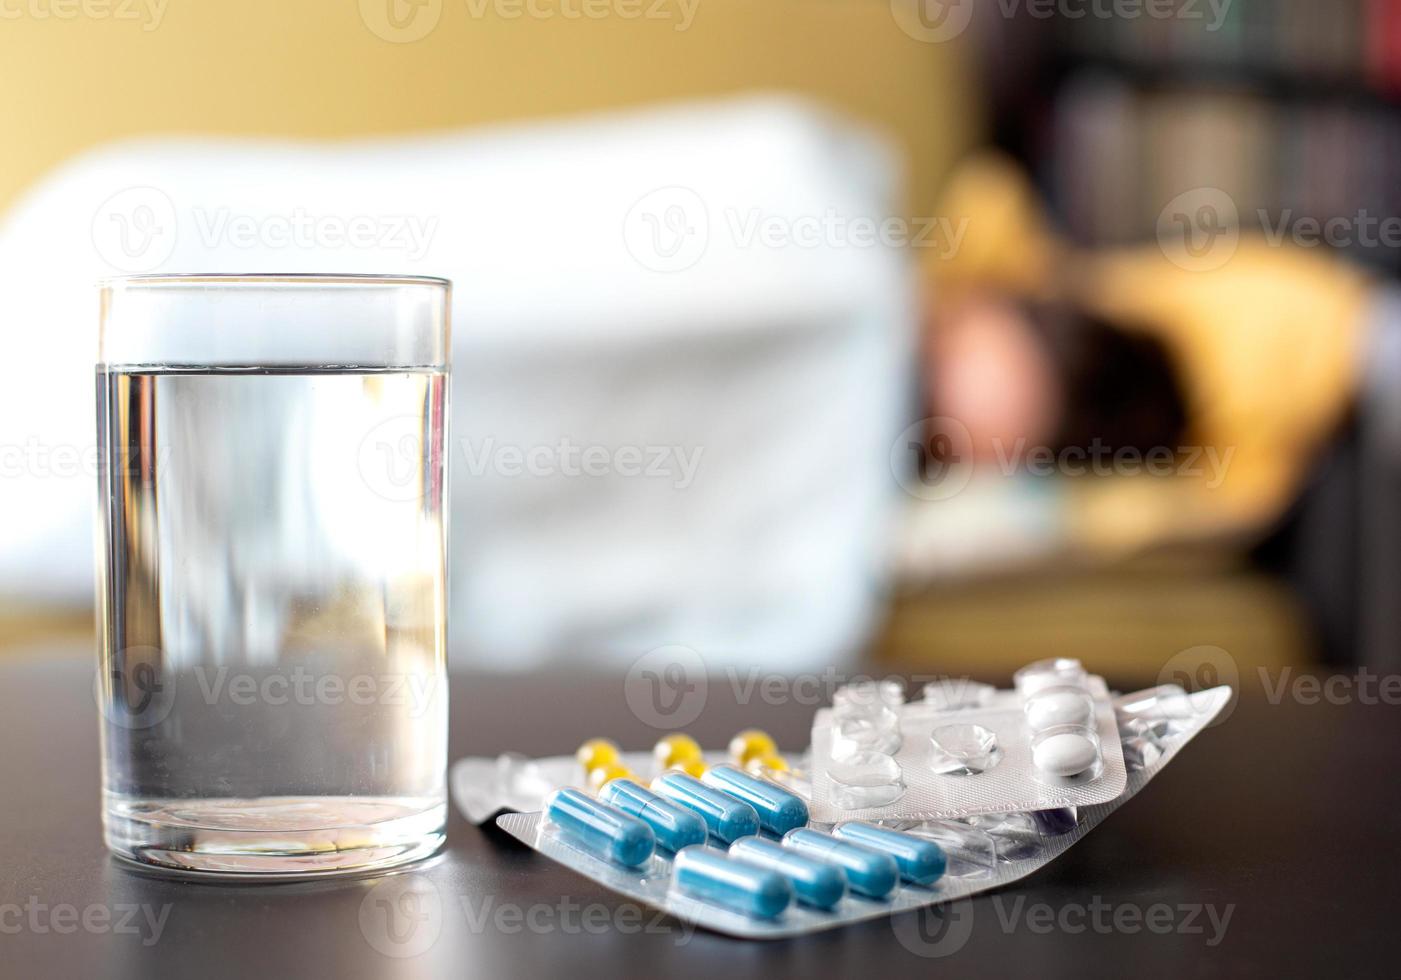 tabletten und ein glas wasser auf dem tisch im hintergrund liegt ein kranker mensch im bett foto